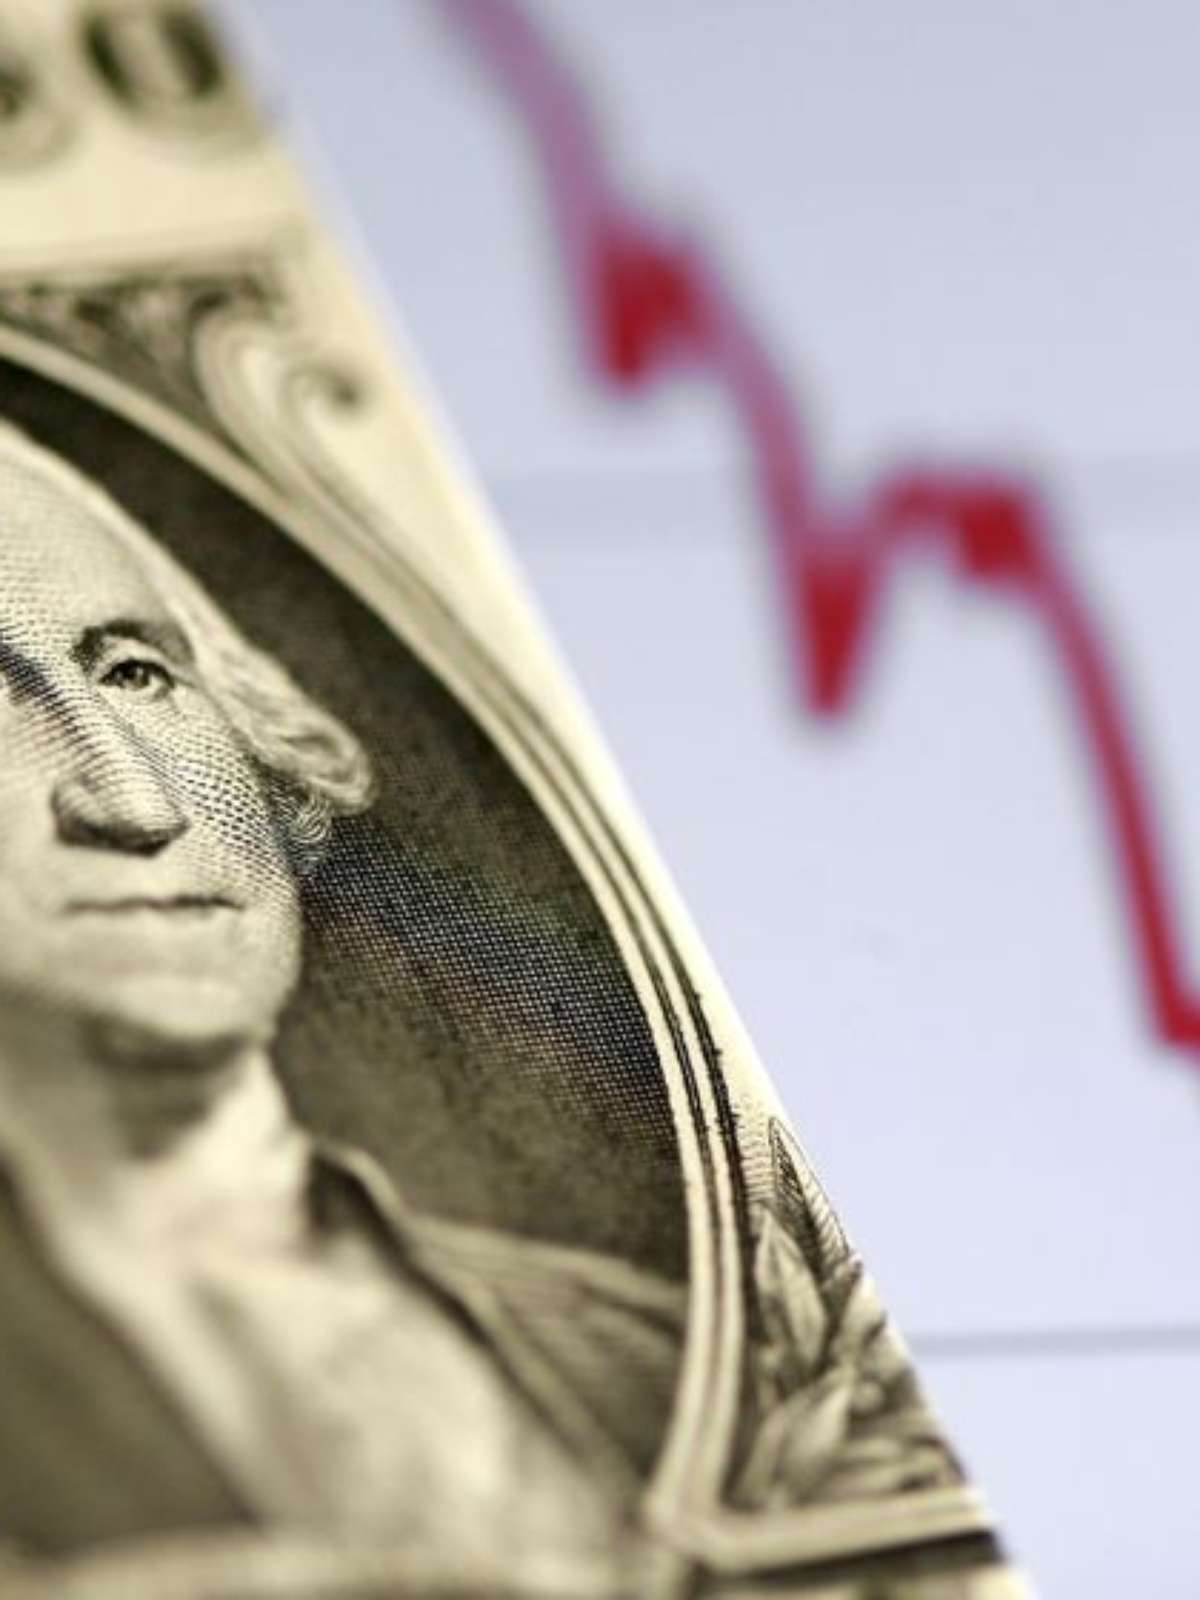 Dólar caindo - Motivos, fortalecimento do real e os investimentos